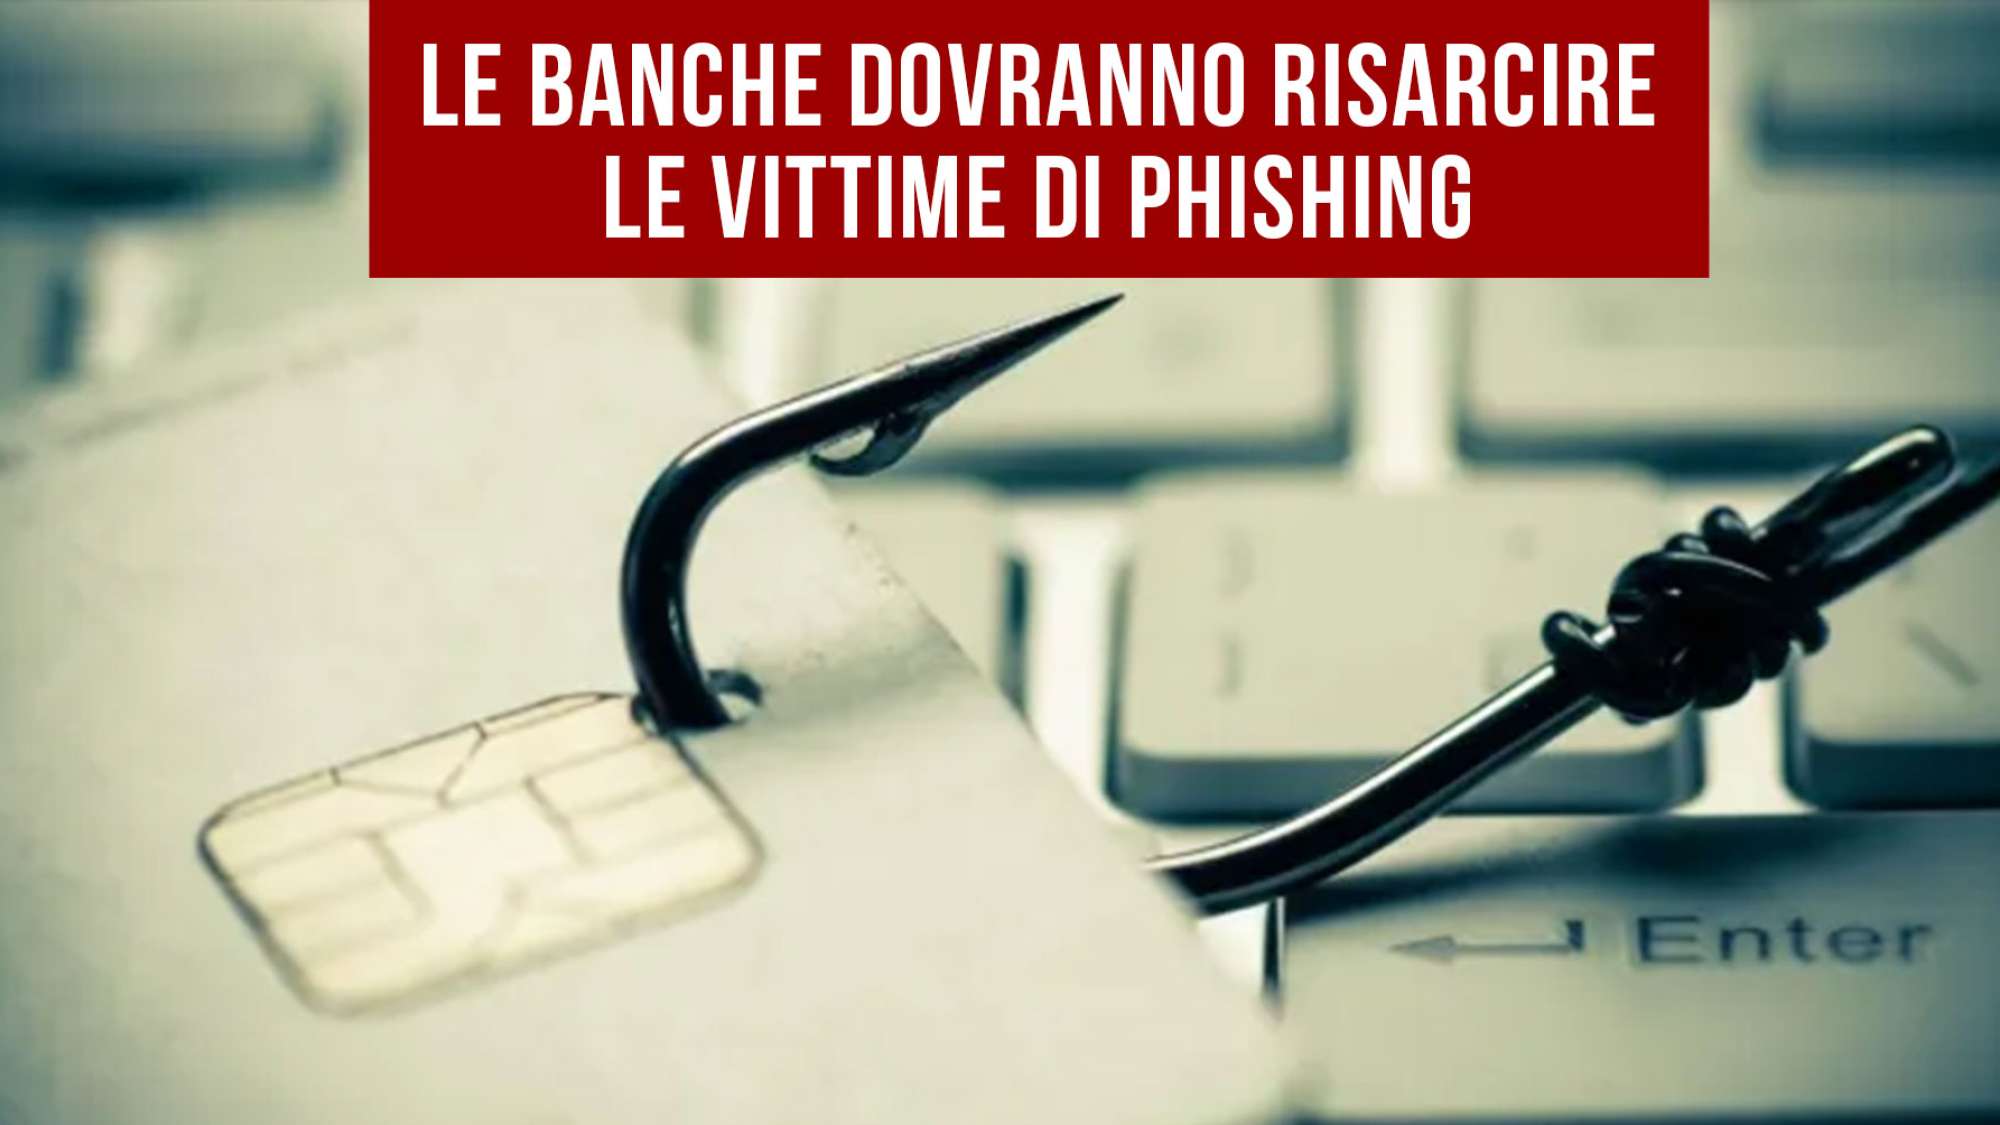 Le banche dovranno risarcire i clienti vittime di phishing: la sentenza della Cassazione